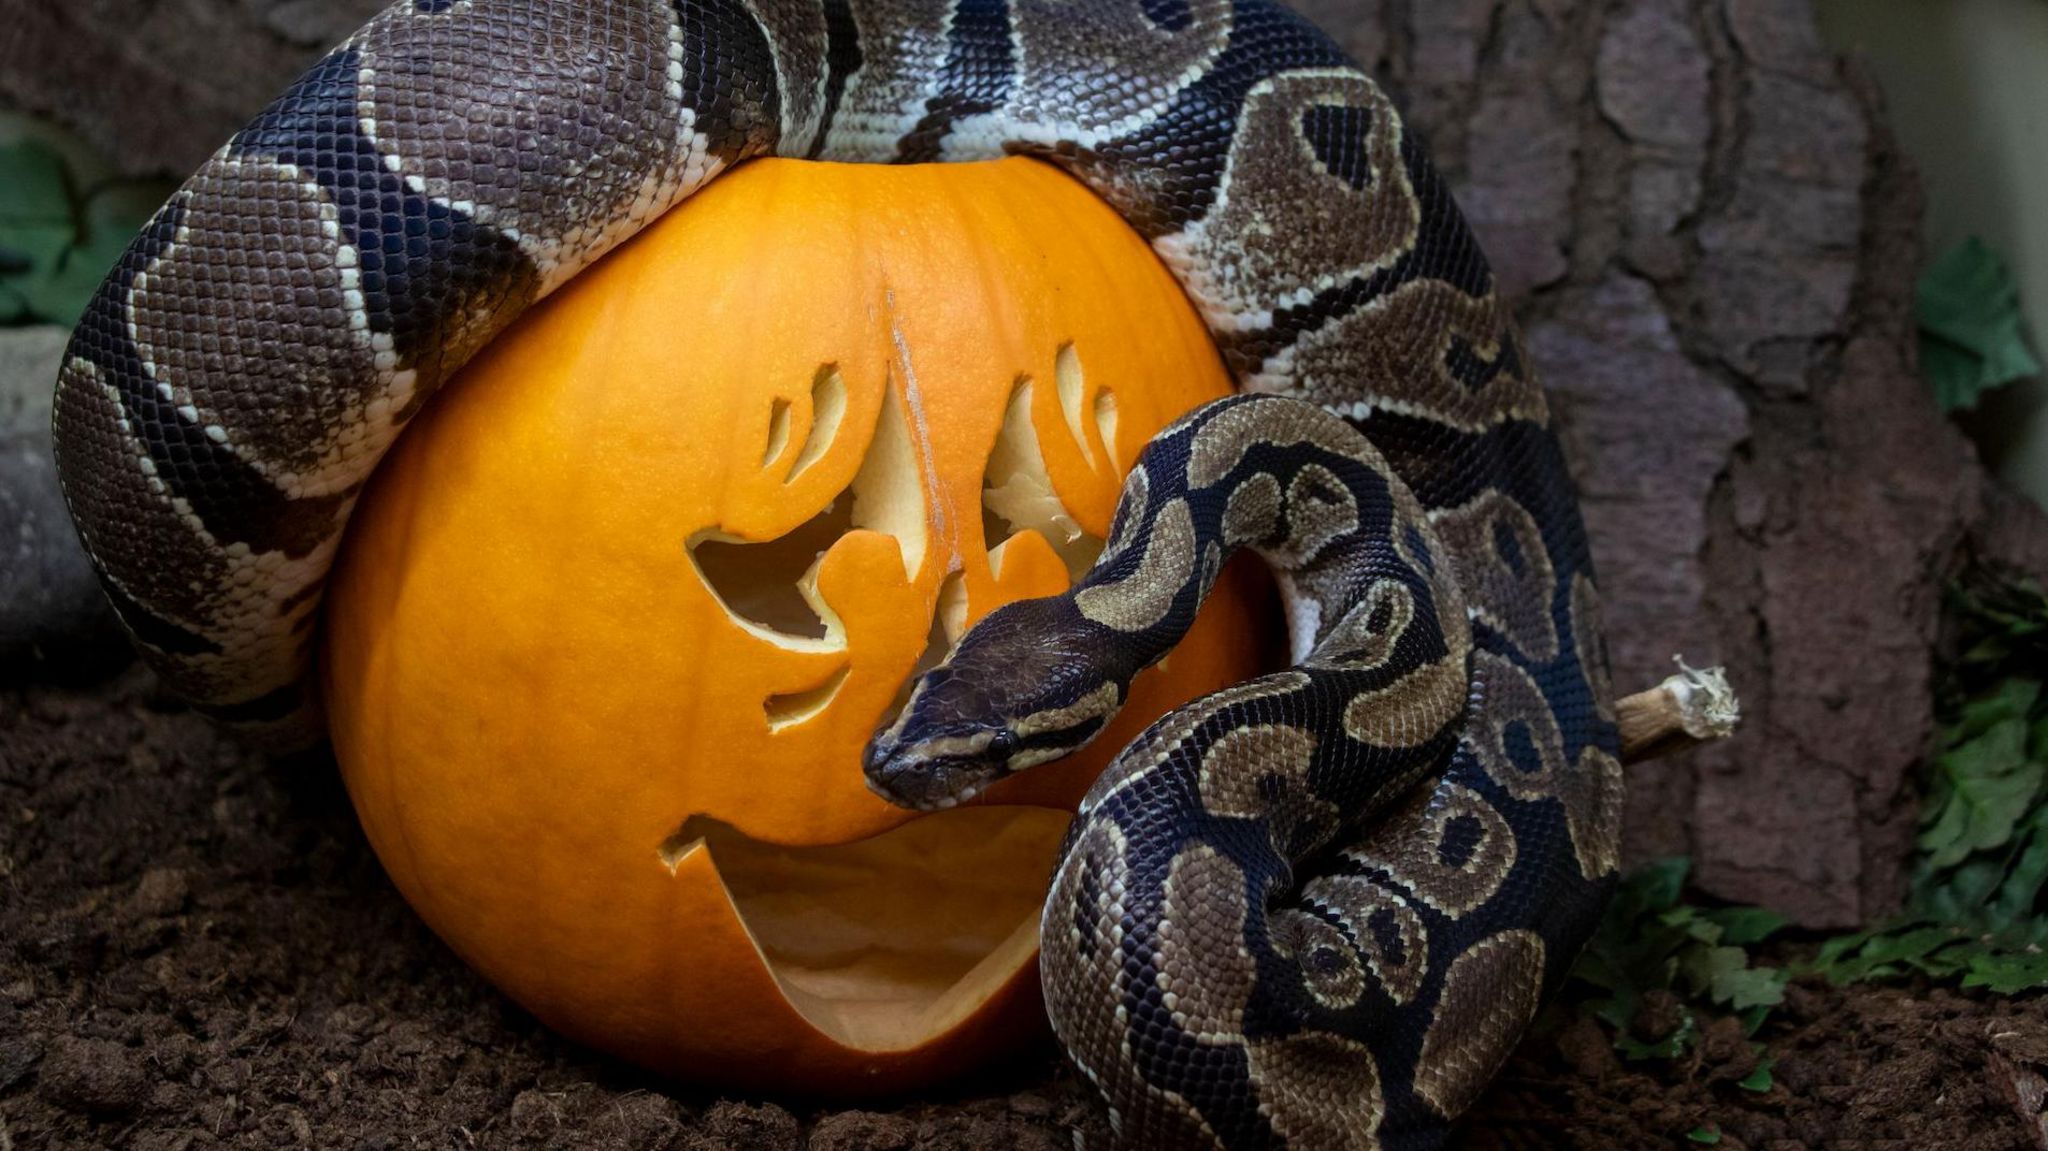 Snake slithering over a carved pumpkin